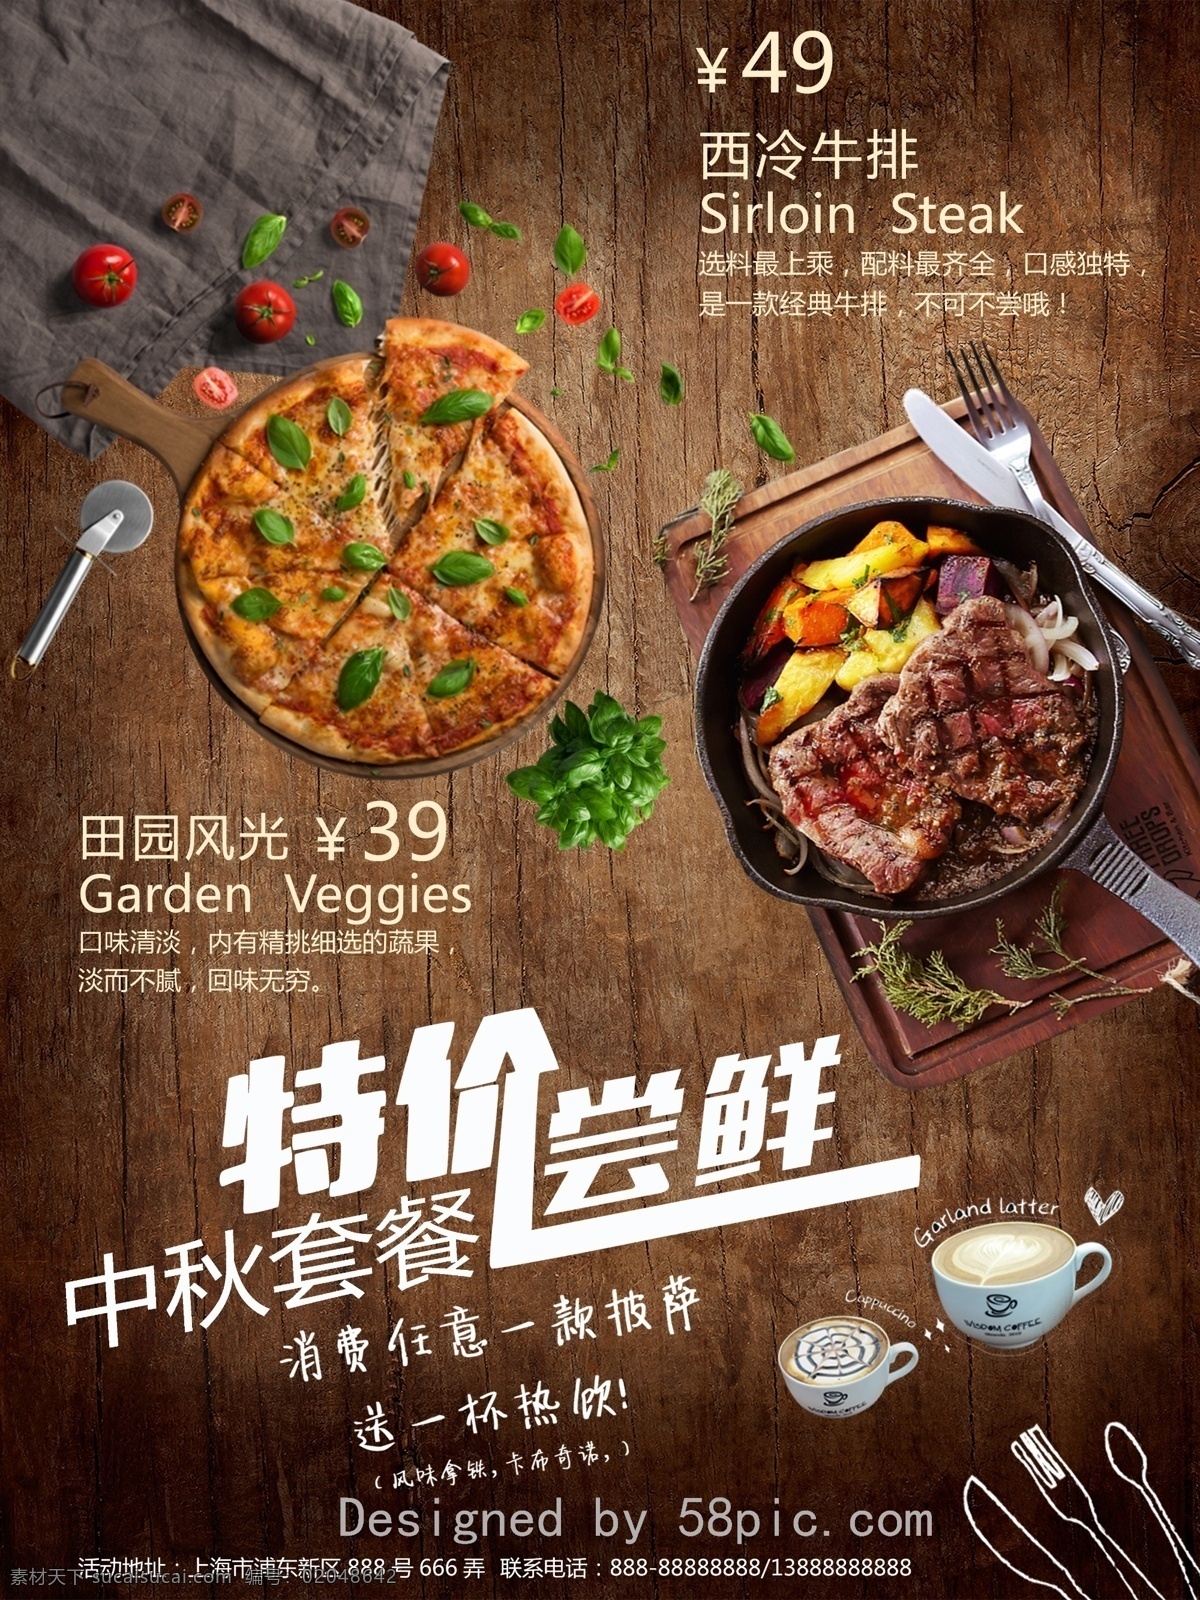 原创 中秋节 餐厅 西餐 牛排 披萨 套餐 促销 宣传海报 原创素材 促销海报